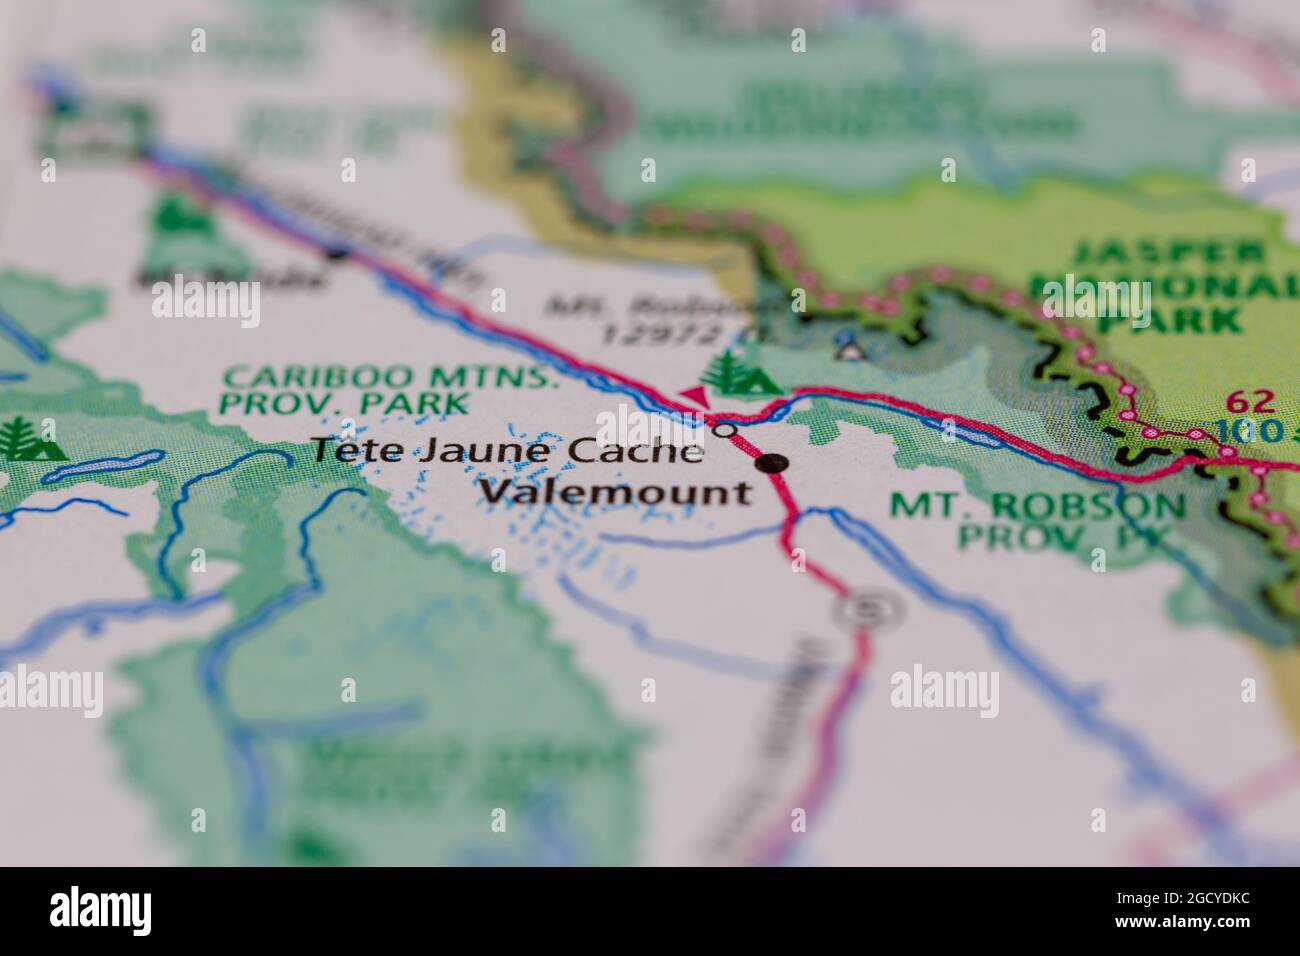 Tete Jaune cache British Columbia Canada visualizzata su una mappa stradale o su una mappa geografica Foto Stock